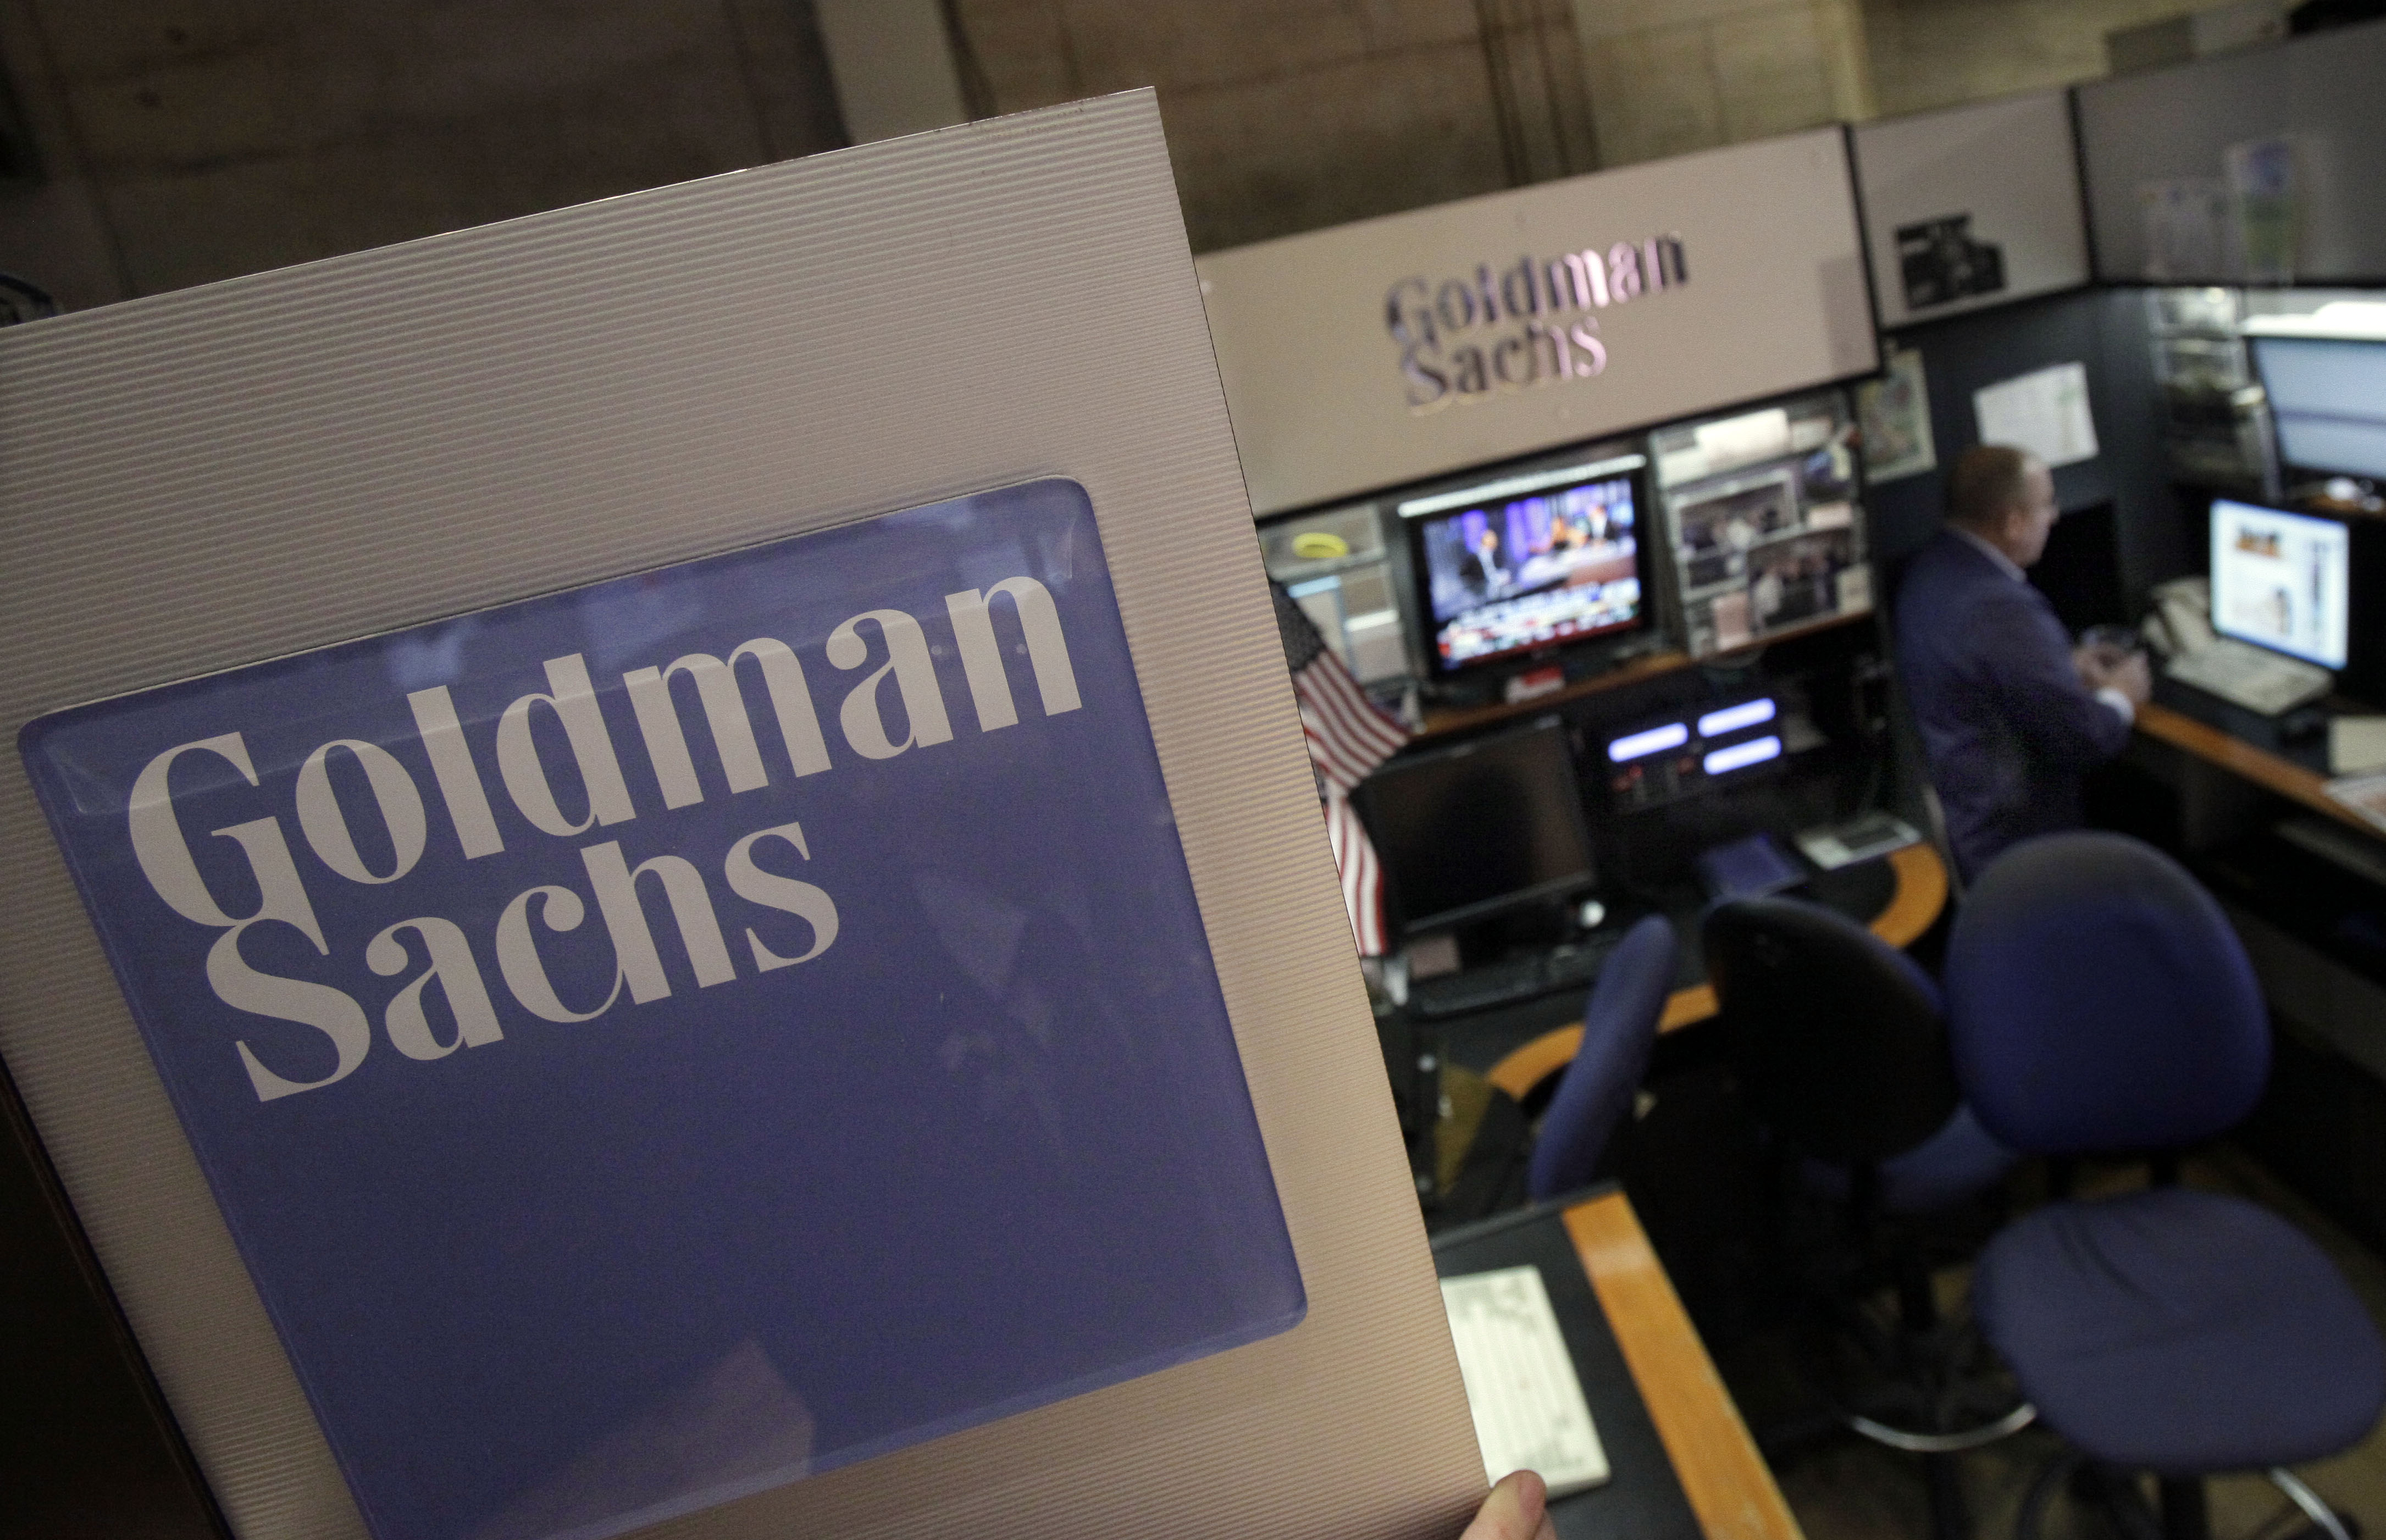 Earns Goldman Sachs